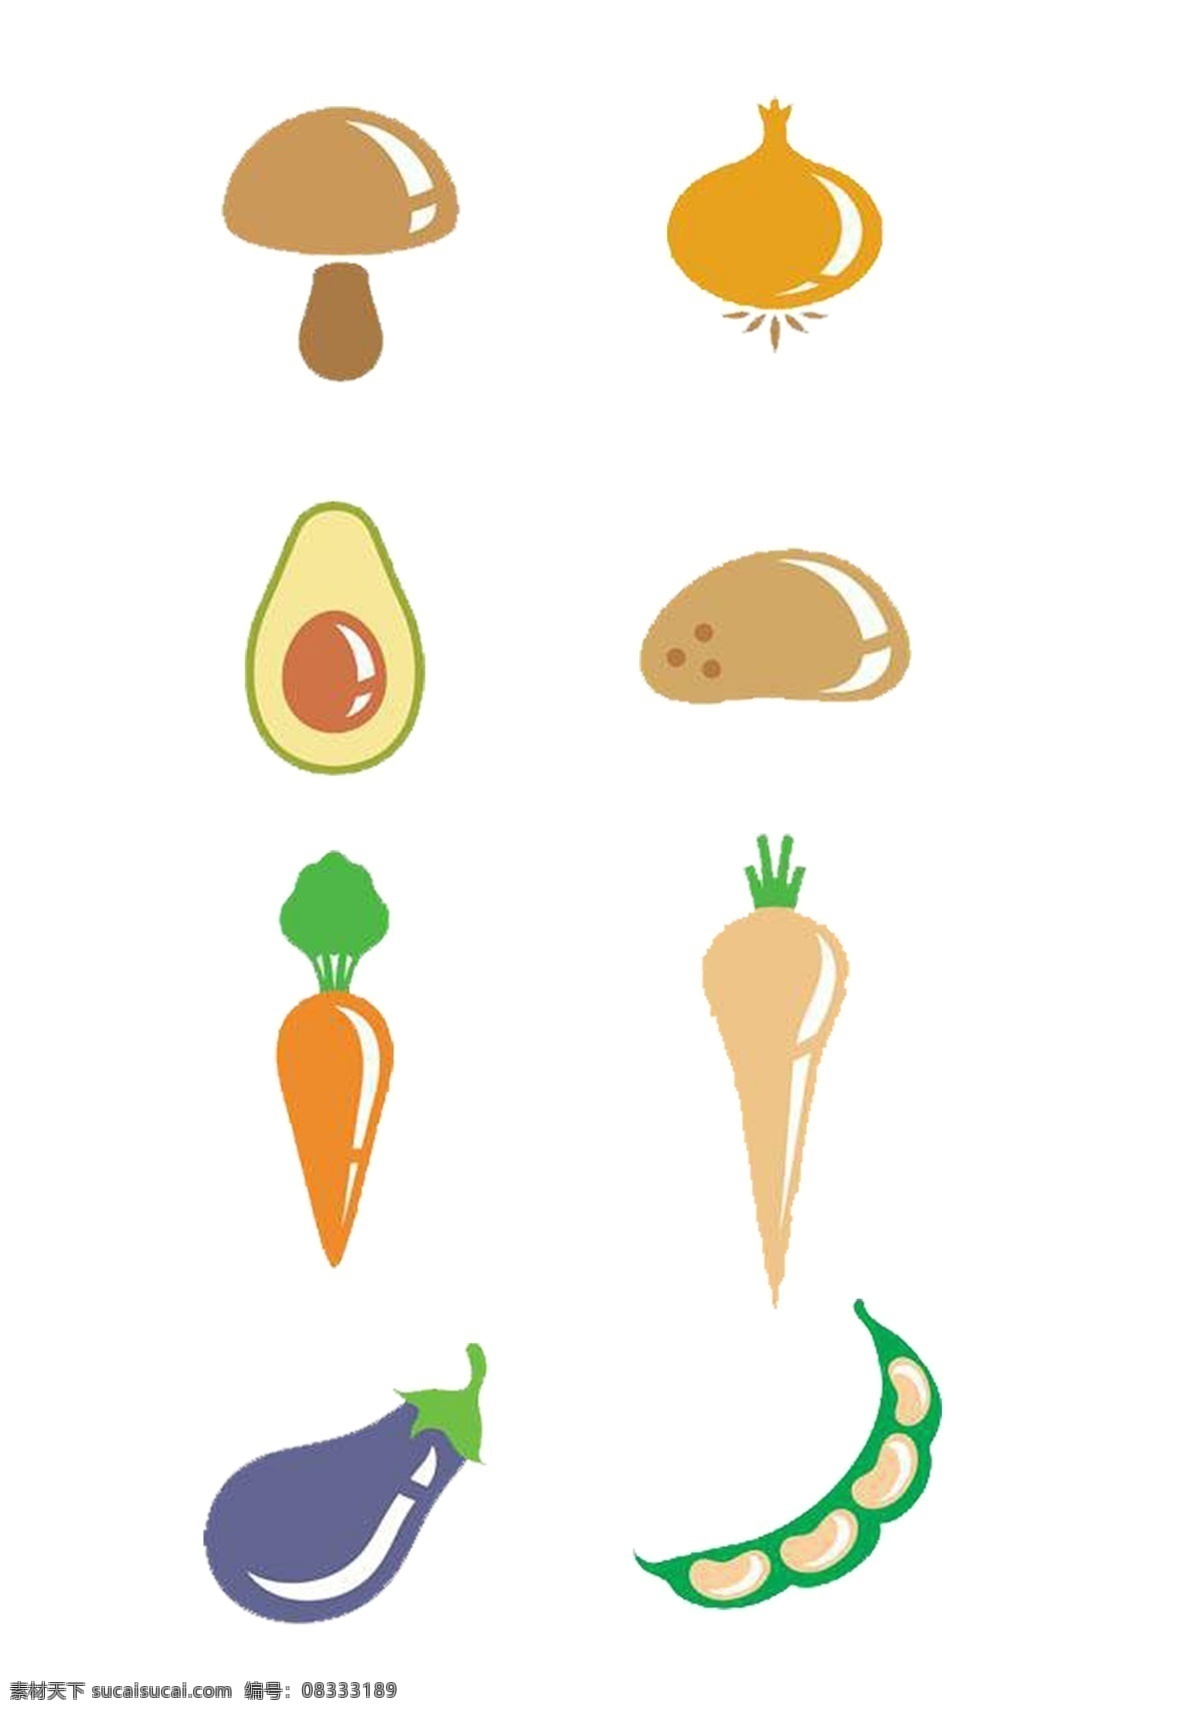 蔬菜 卡通 图标素材 图标 茄子 豆角 蘑菇 蒜 鸡蛋 土豆 胡萝卜 萝卜 简单 填充 可分开使用